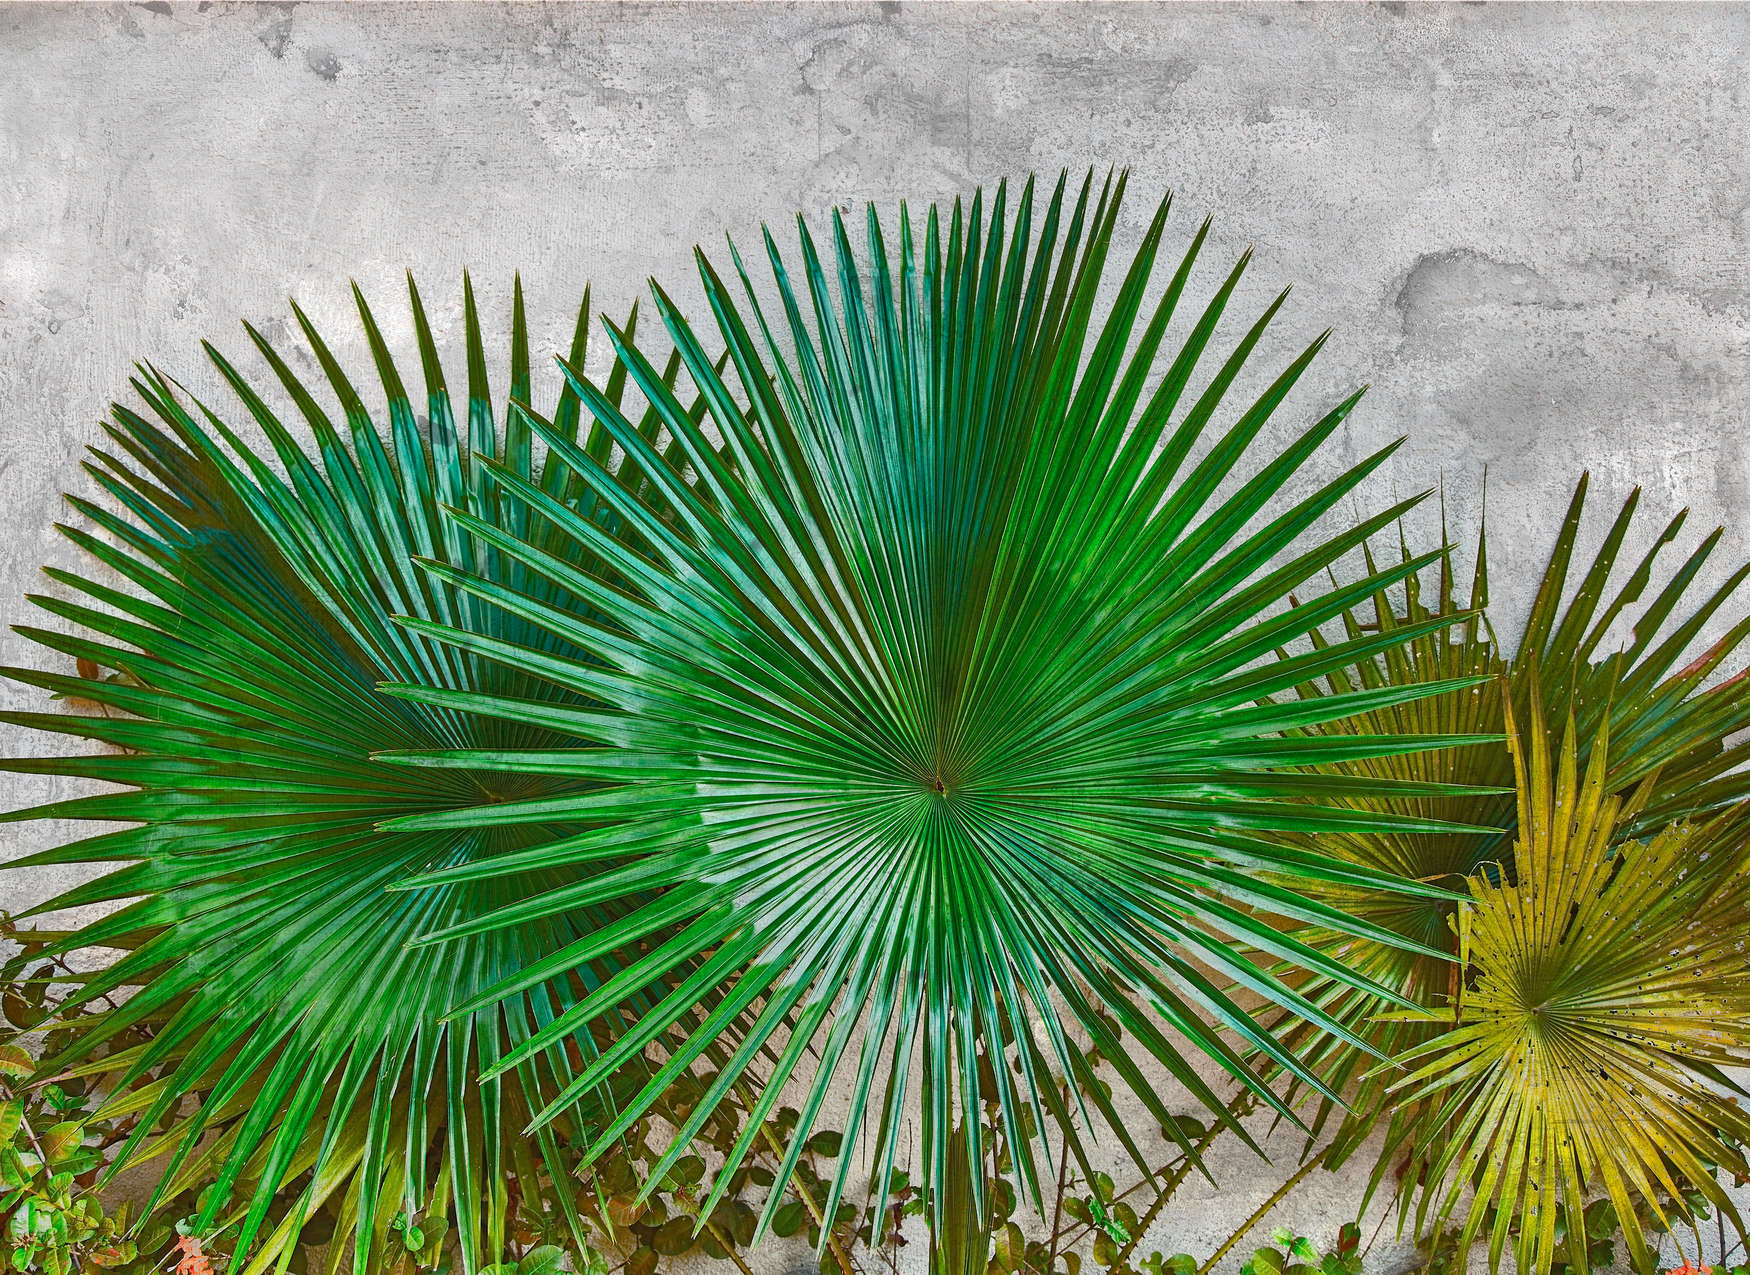             Papier peint feuilles d'agave devant un mur de béton - vert, gris
        